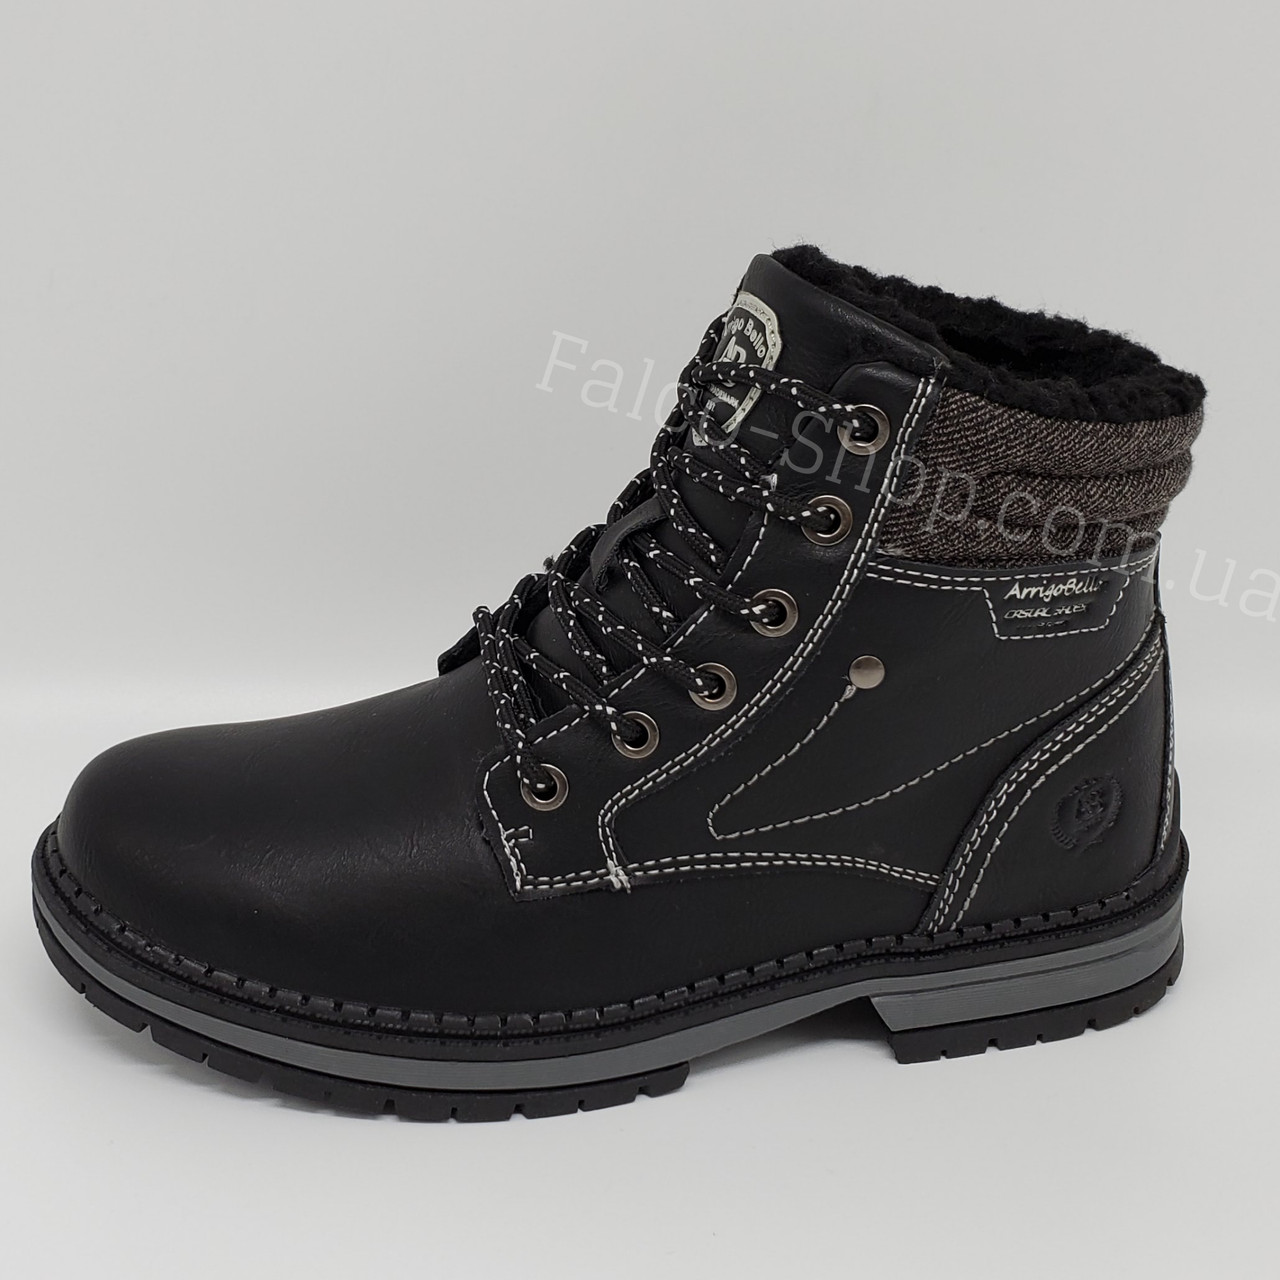 

Ботинки зимние женские, подростковые чёрные Arrigo Bello. 36(22.7см), Черный